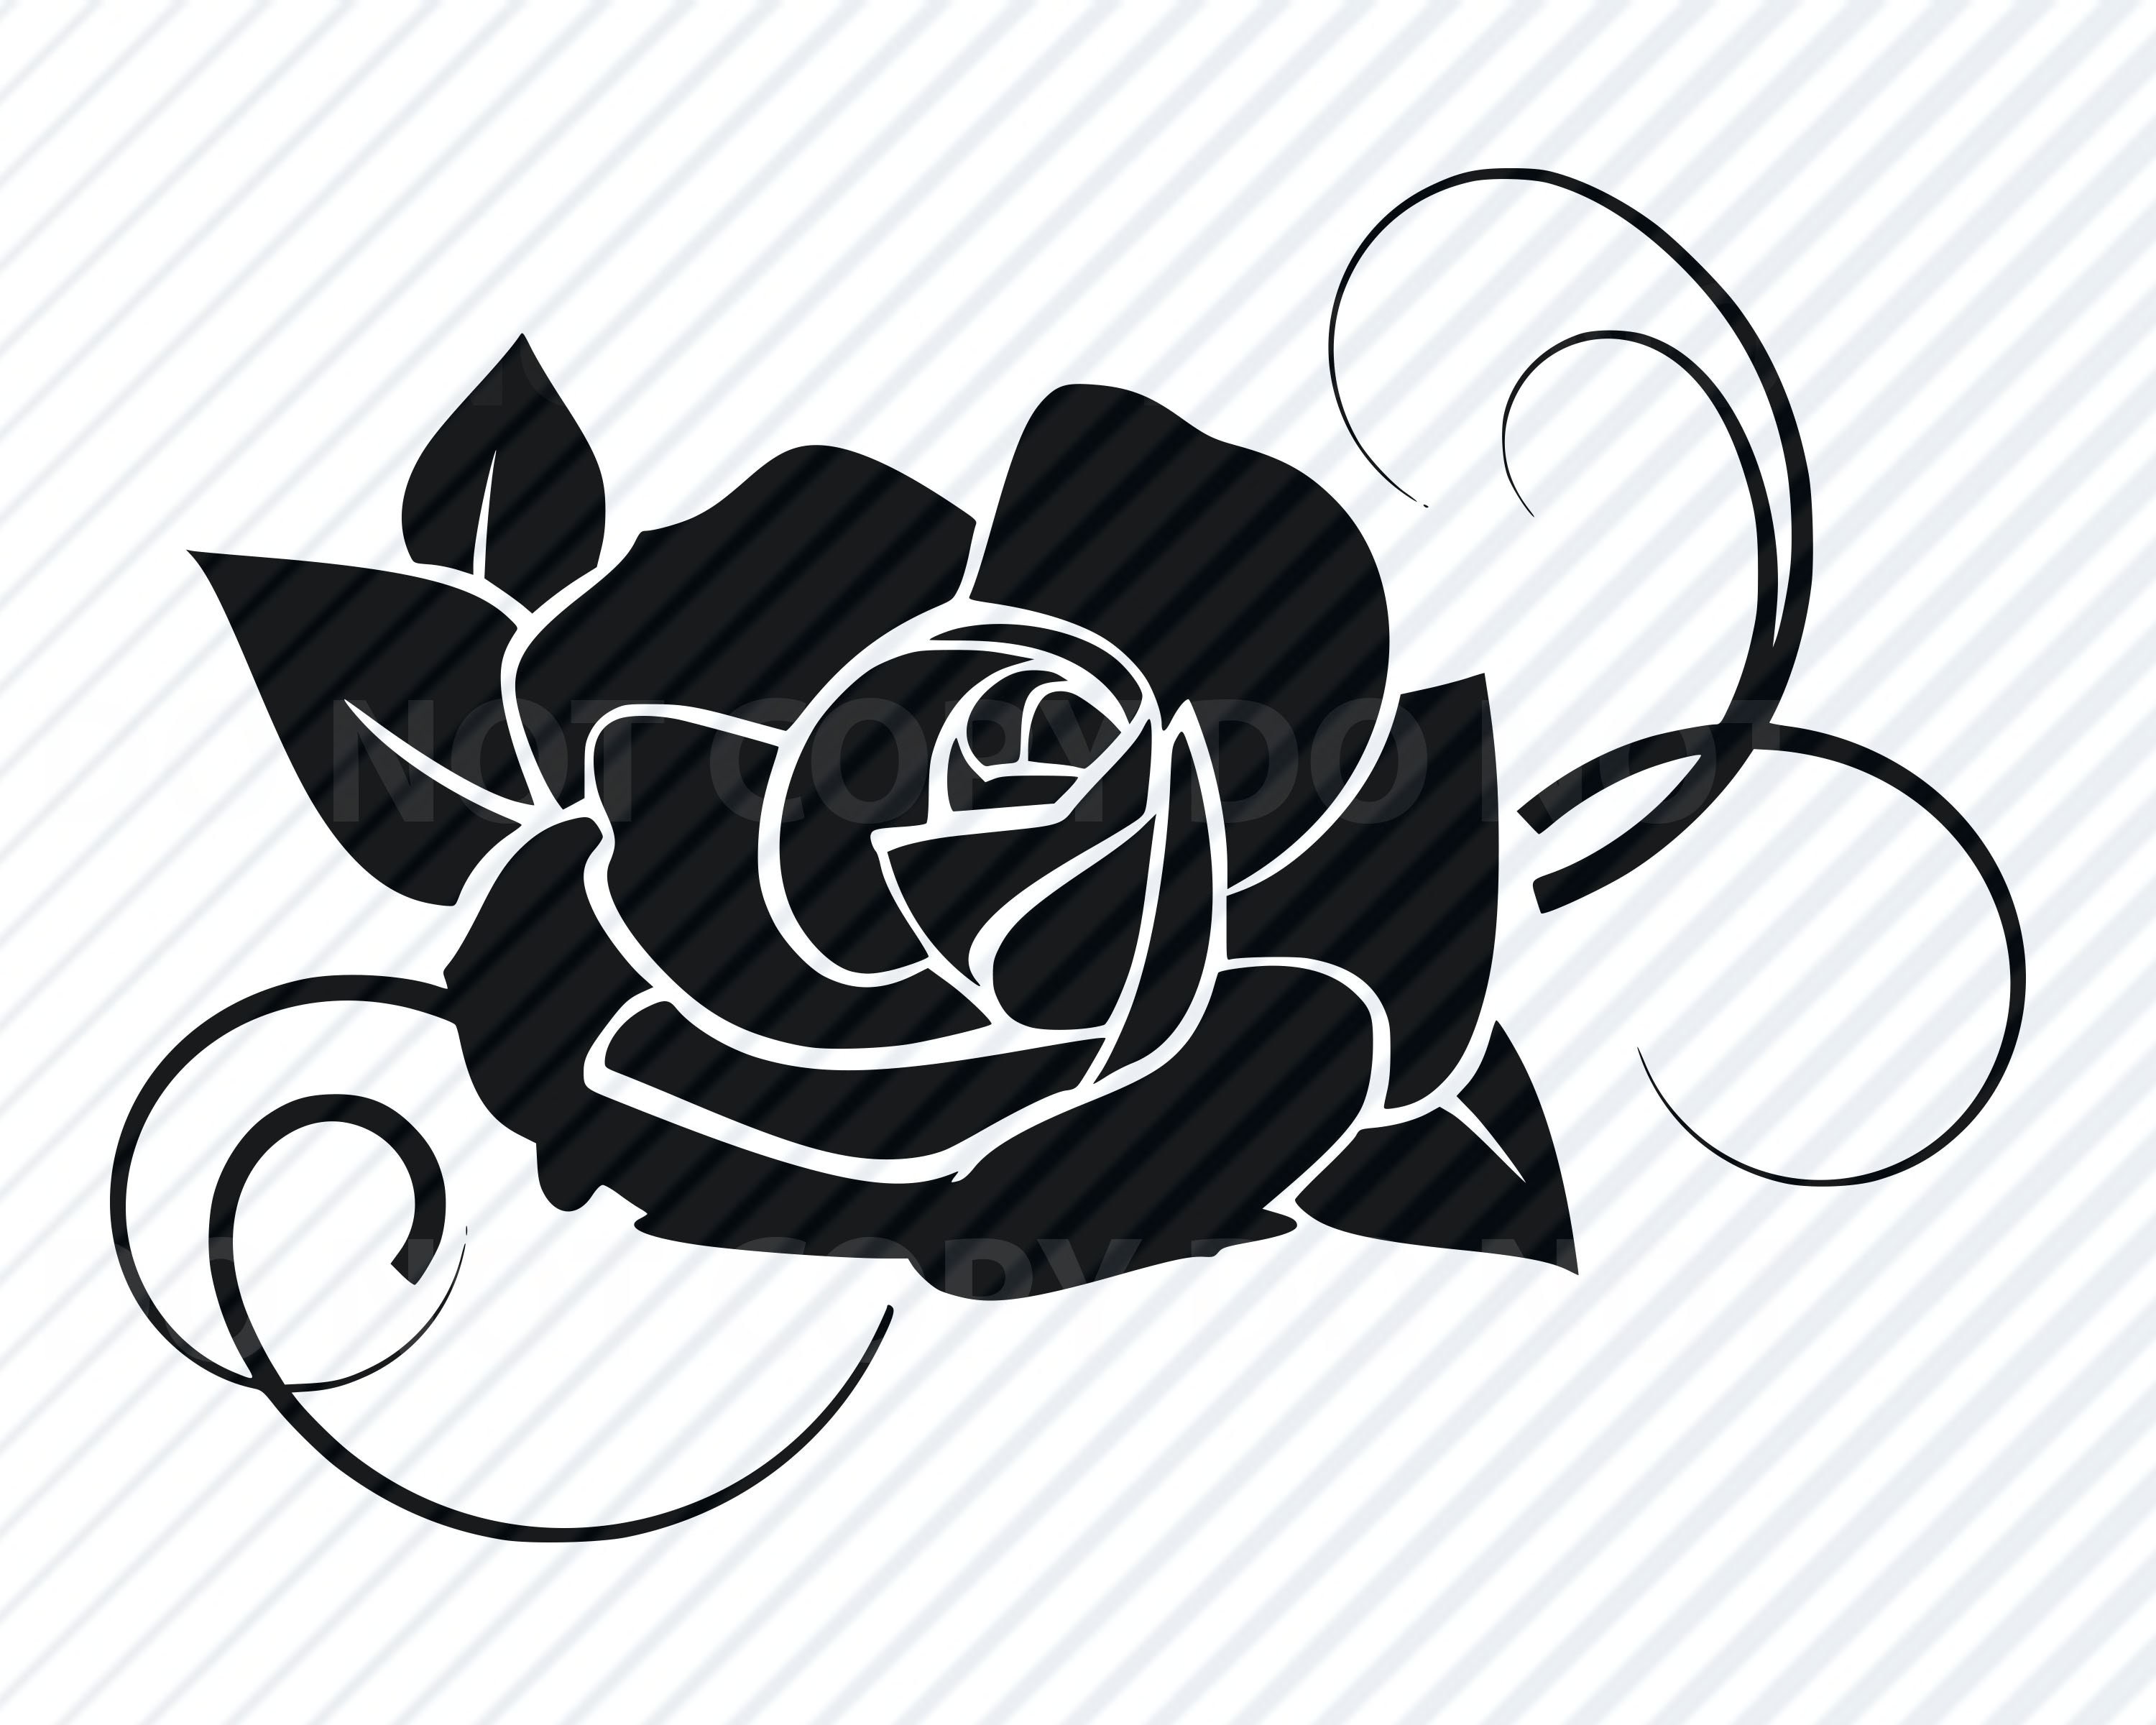 Download Black Rose Flower SVG Files for cricut Flower Vector Images | Etsy